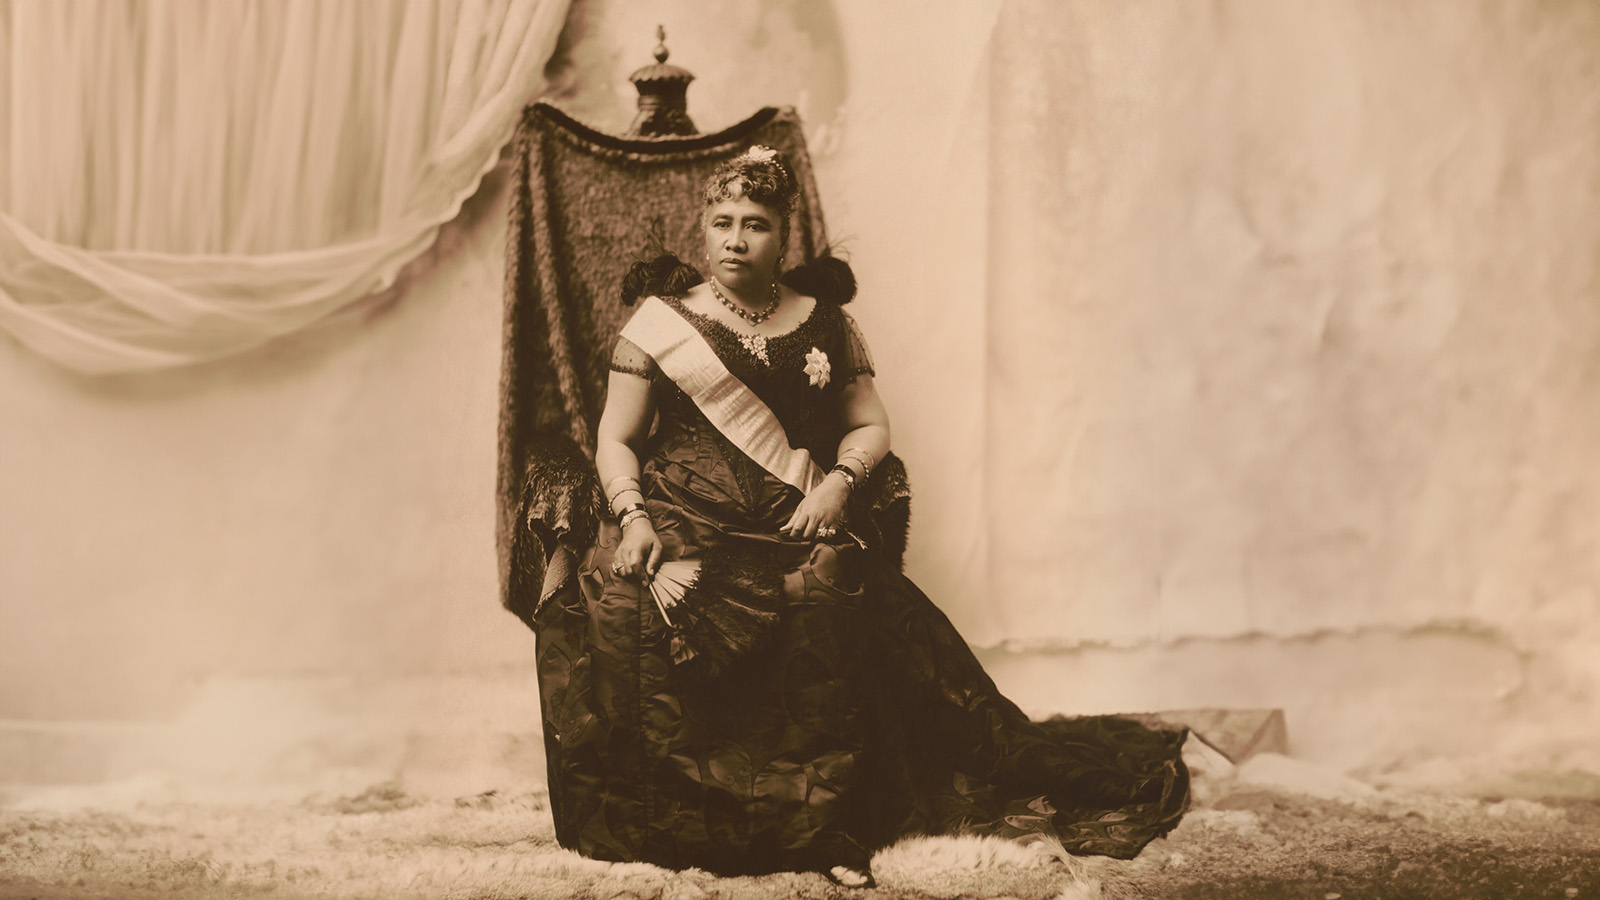 Как поэтесса защищала права женщин и стала королевой Гавайев, но потеряла трон